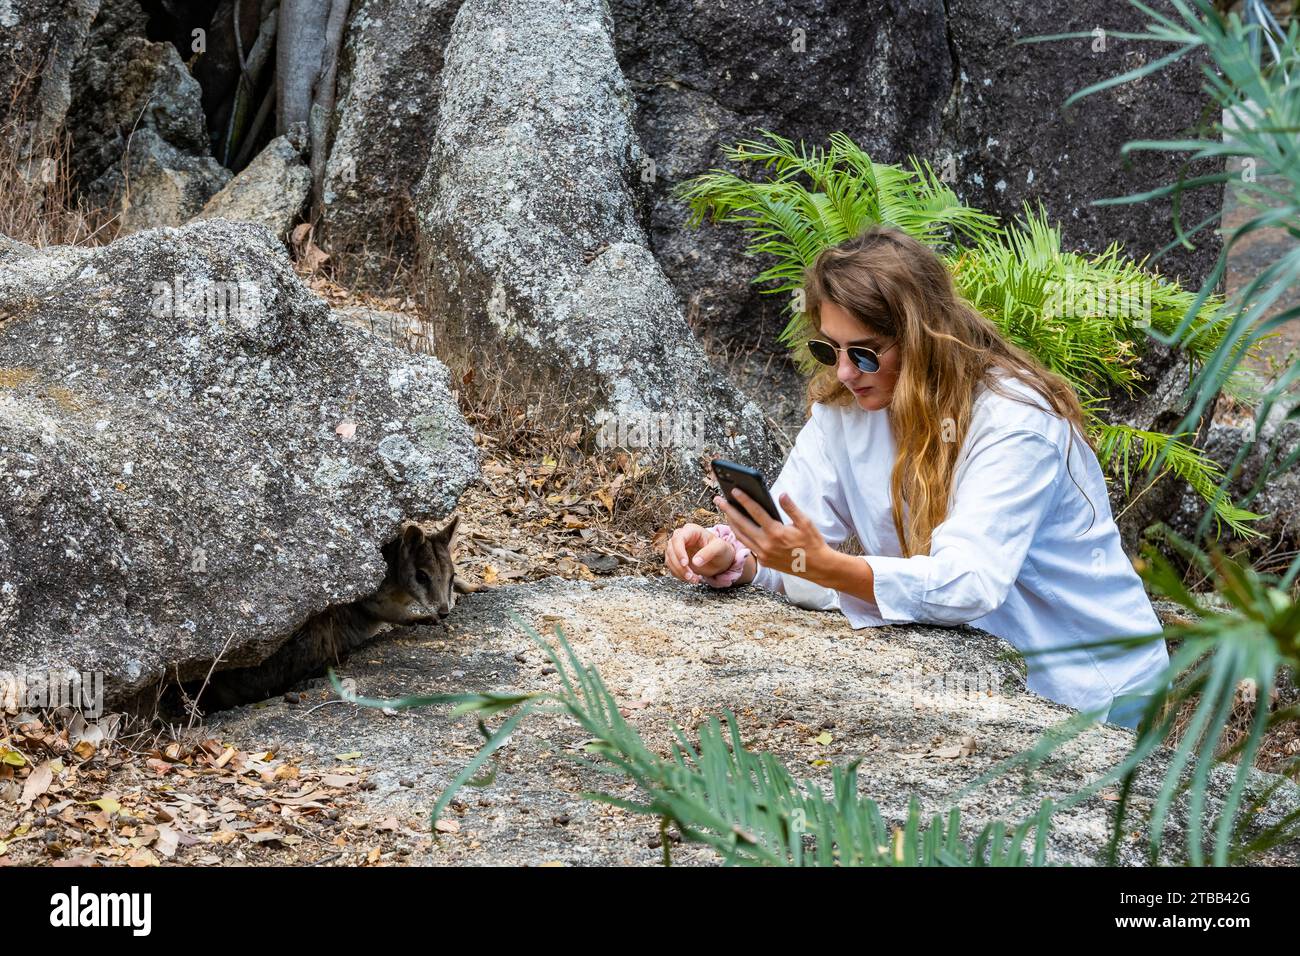 Eine junge Frau macht Handyfotos von einem Mareeba Rock Wallaby (Petrogale mareeba) in einem Naturschutzgebiet. Australien. Stockfoto